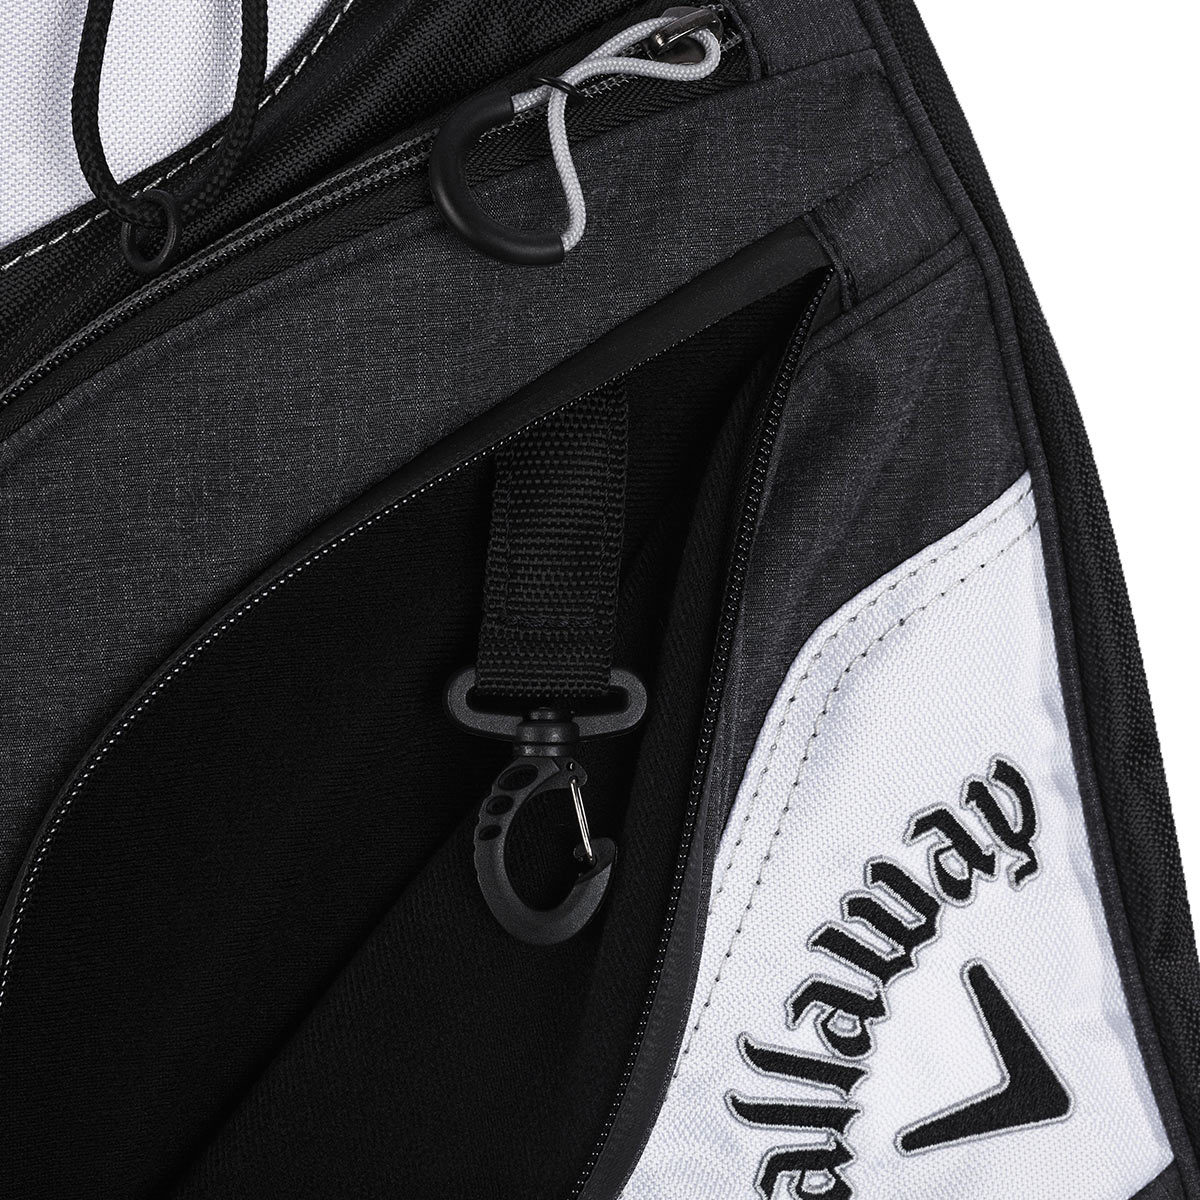 Callaway Premium Stand Bag in Black / Grey